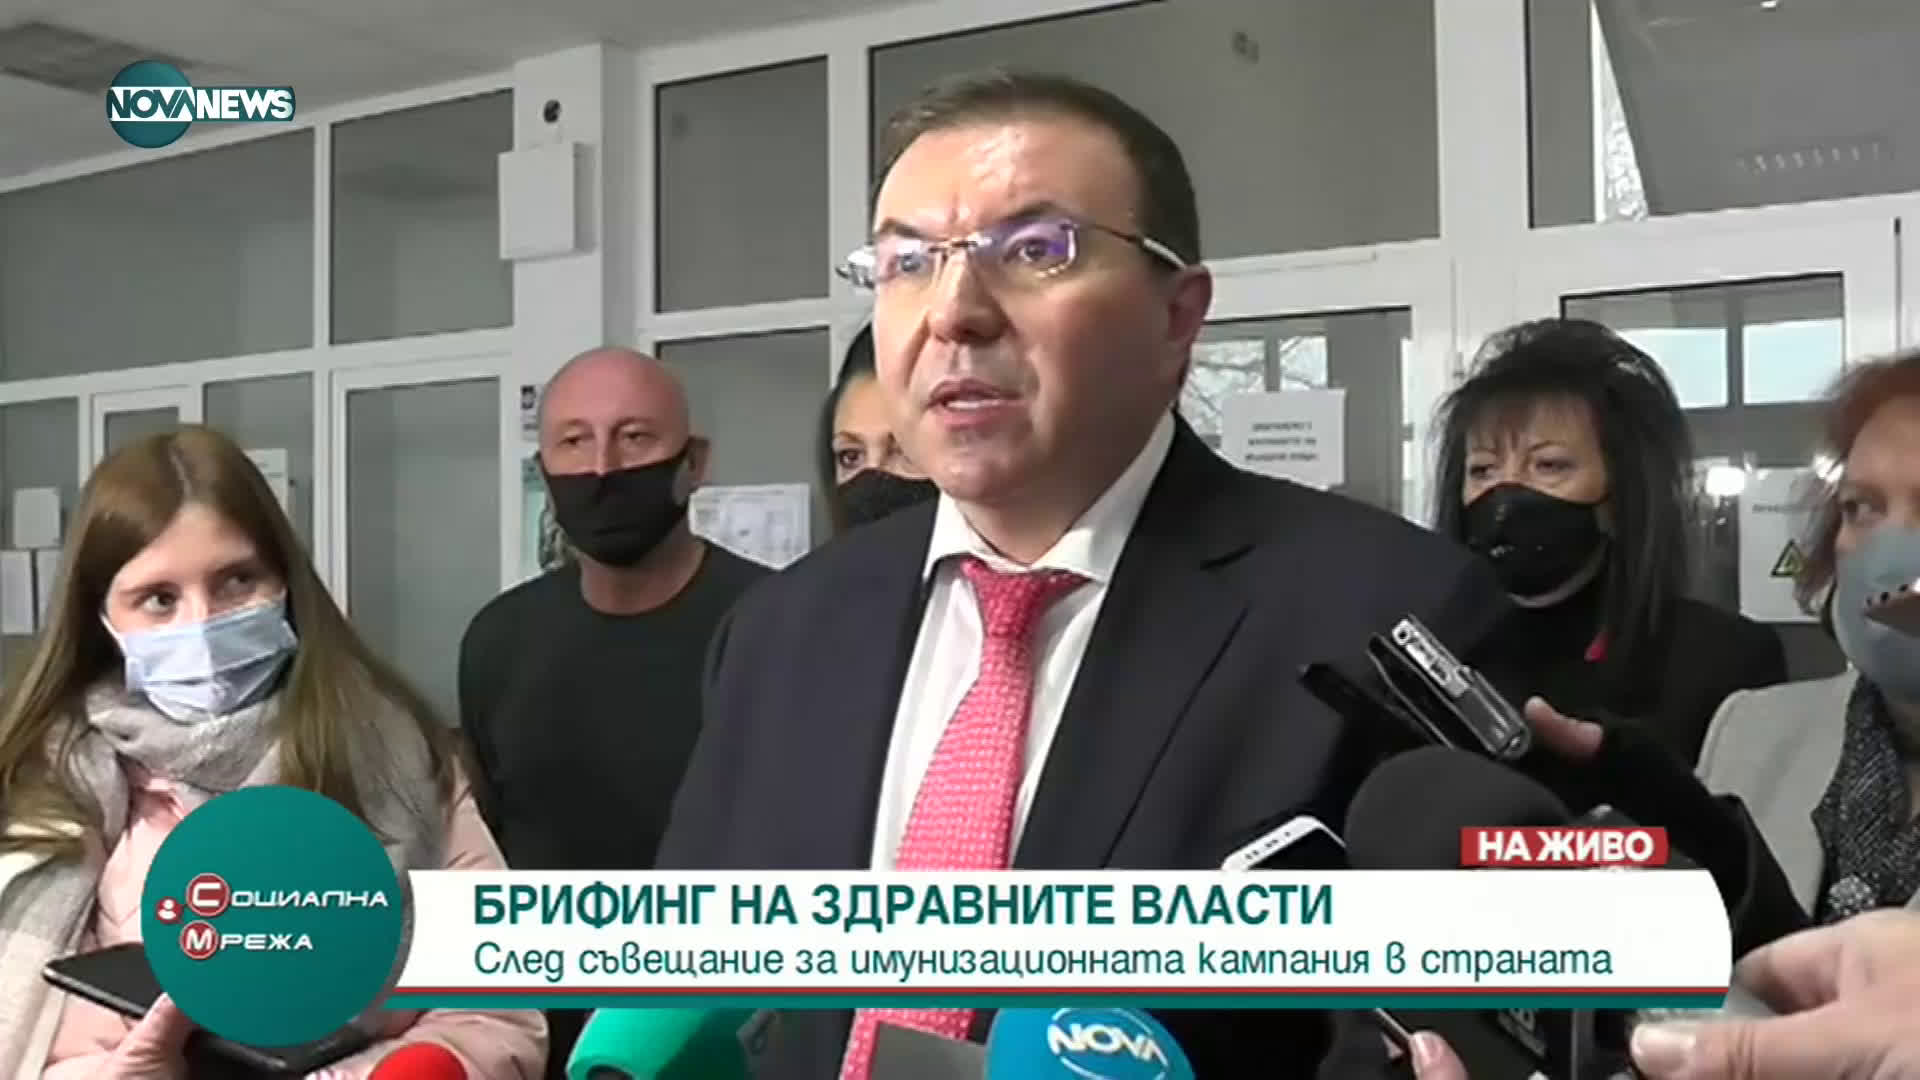 Проф. Ангелов с брифинг след съвещание за имунизационната кампания в страната